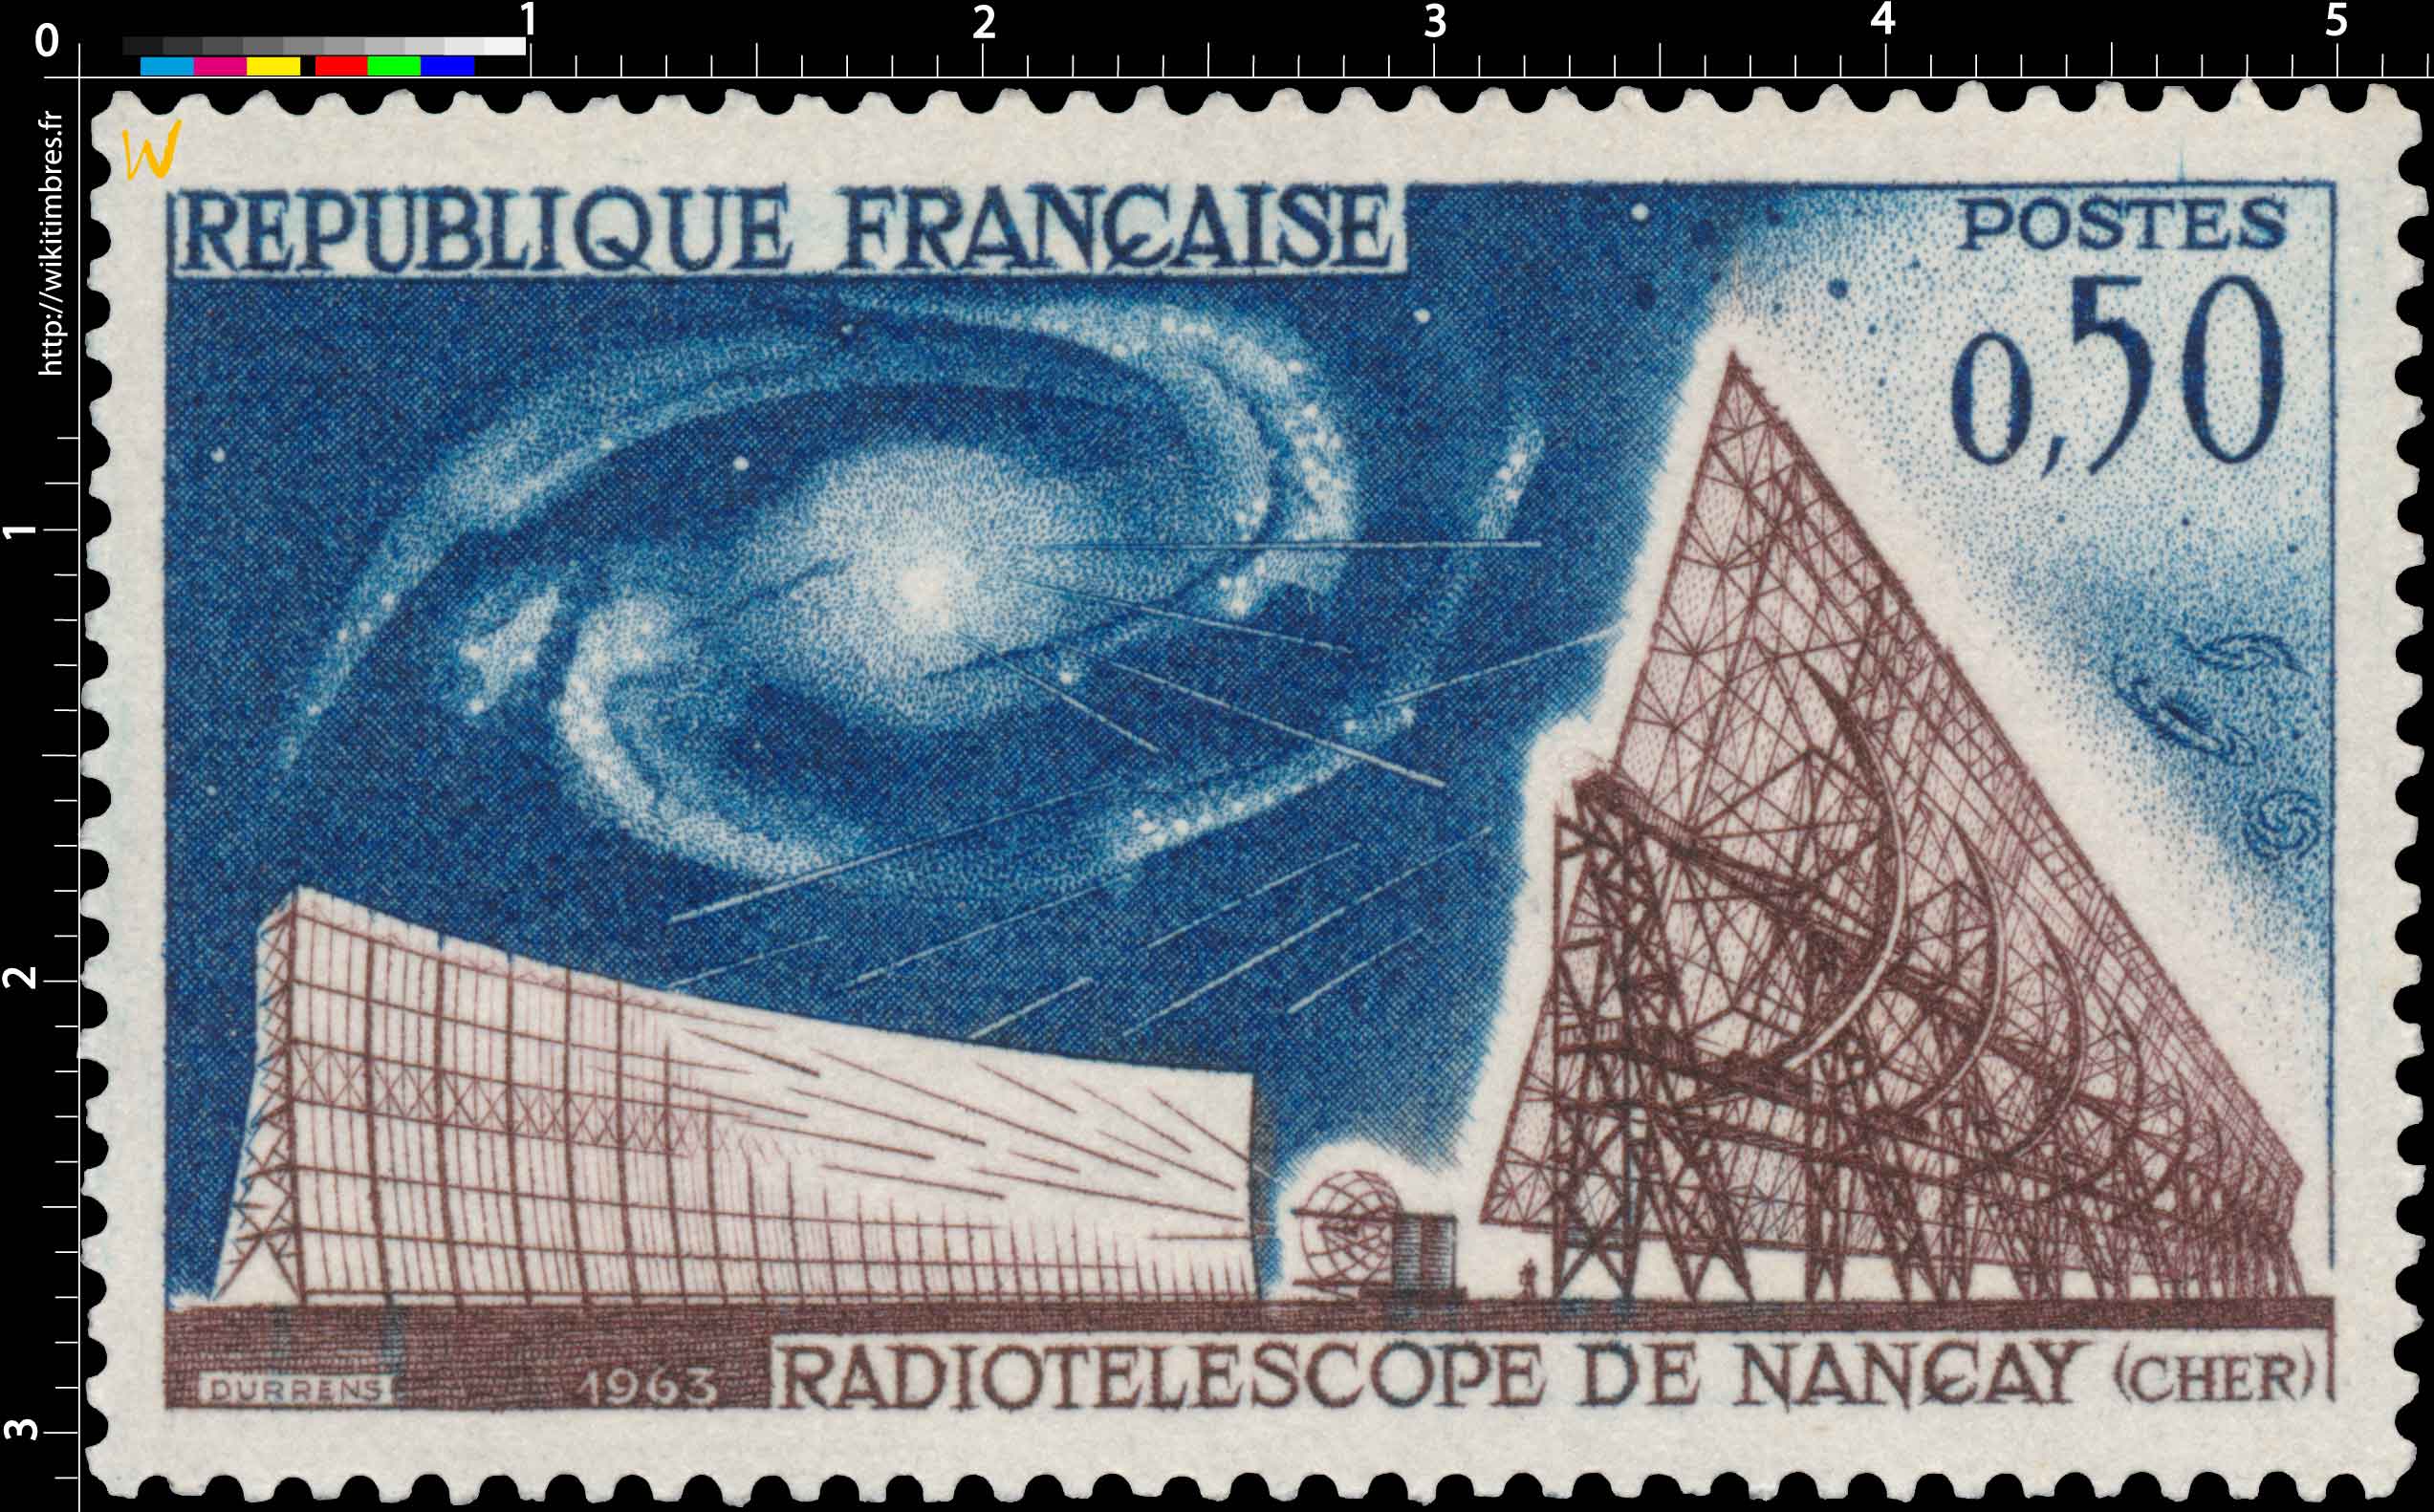 1963 RADIOTÉLESCOPE DE NANÇAY (CHER)